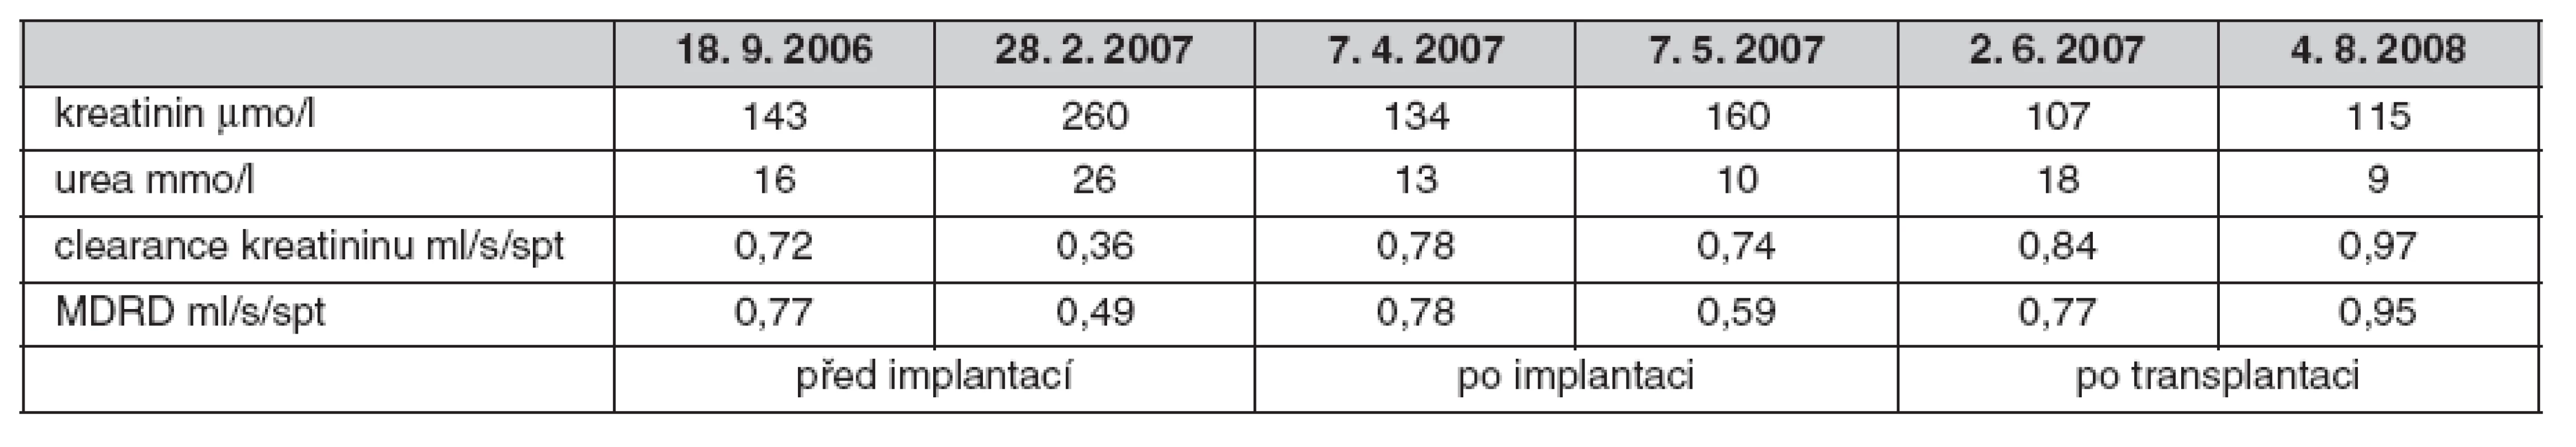 Vývoj renálních funkcí 09/2006 až 08/2008